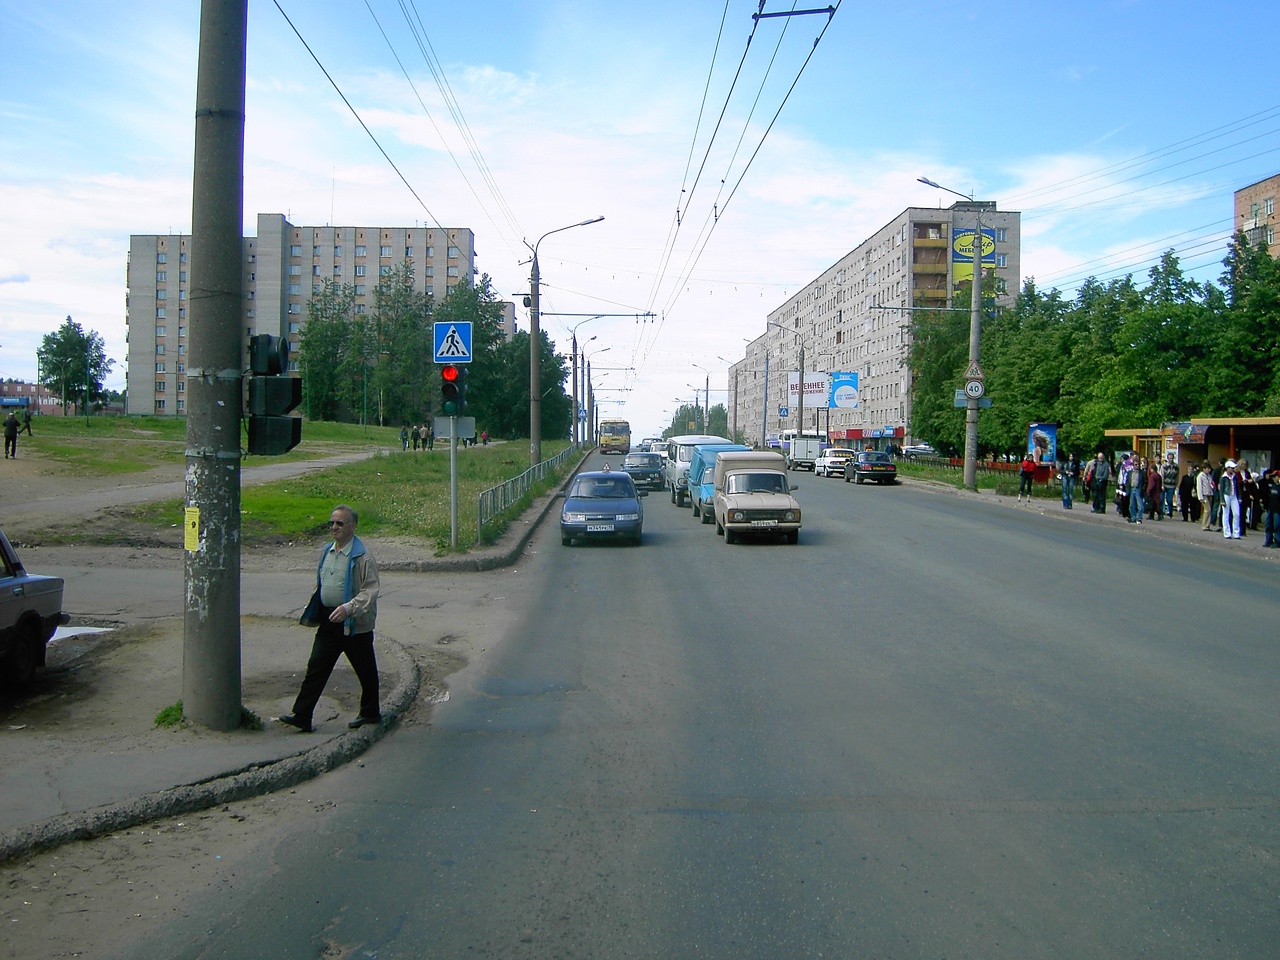 Улица Ворошилова. Июнь 2005 года. Ижевск. Все автомобили отечественные. На дороге никакой разметки.